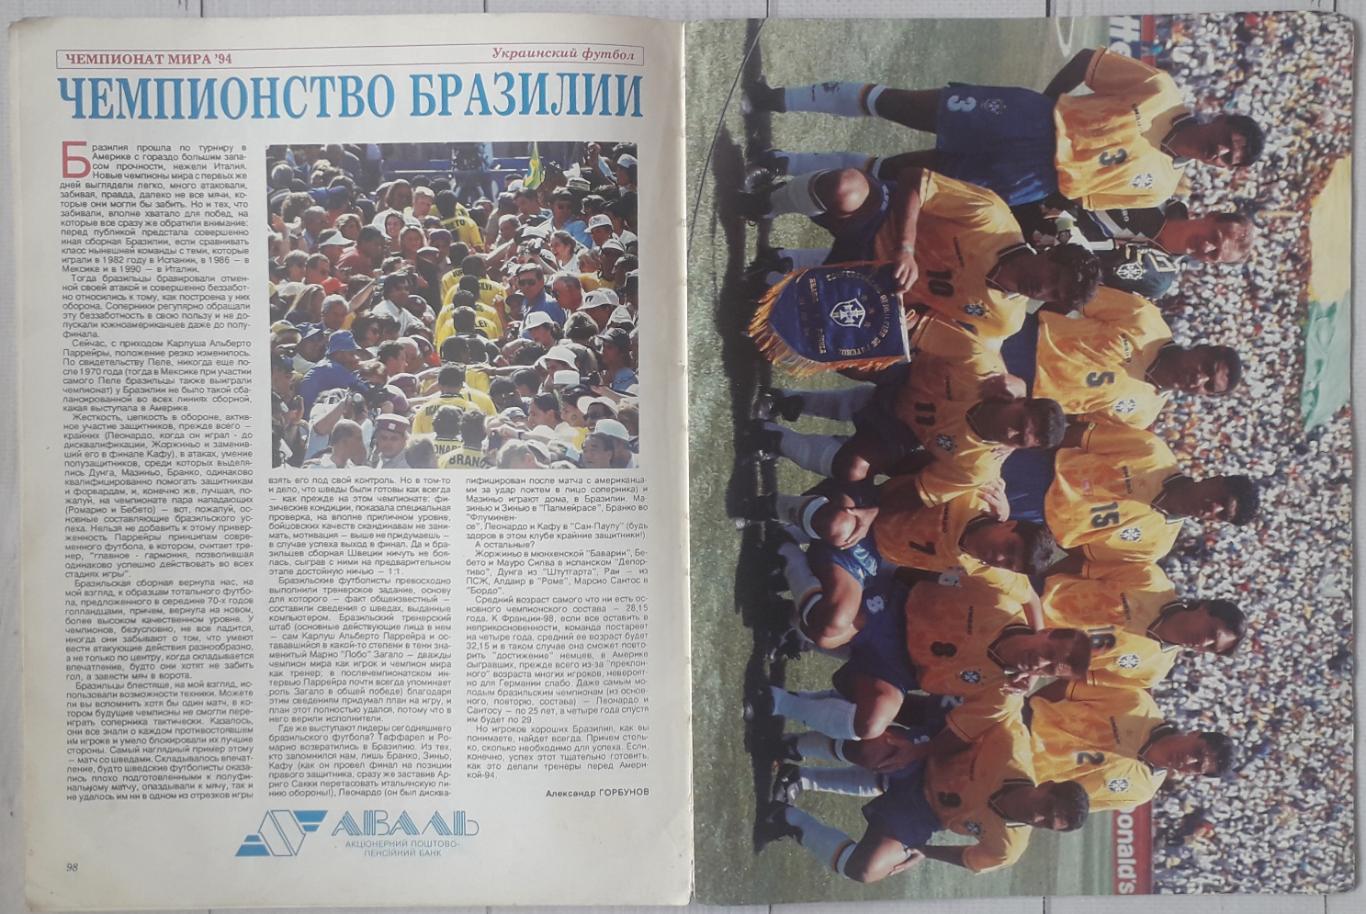 Мир футбола. Український футбол 94/95. Вища ліга. Спецвипуск 3